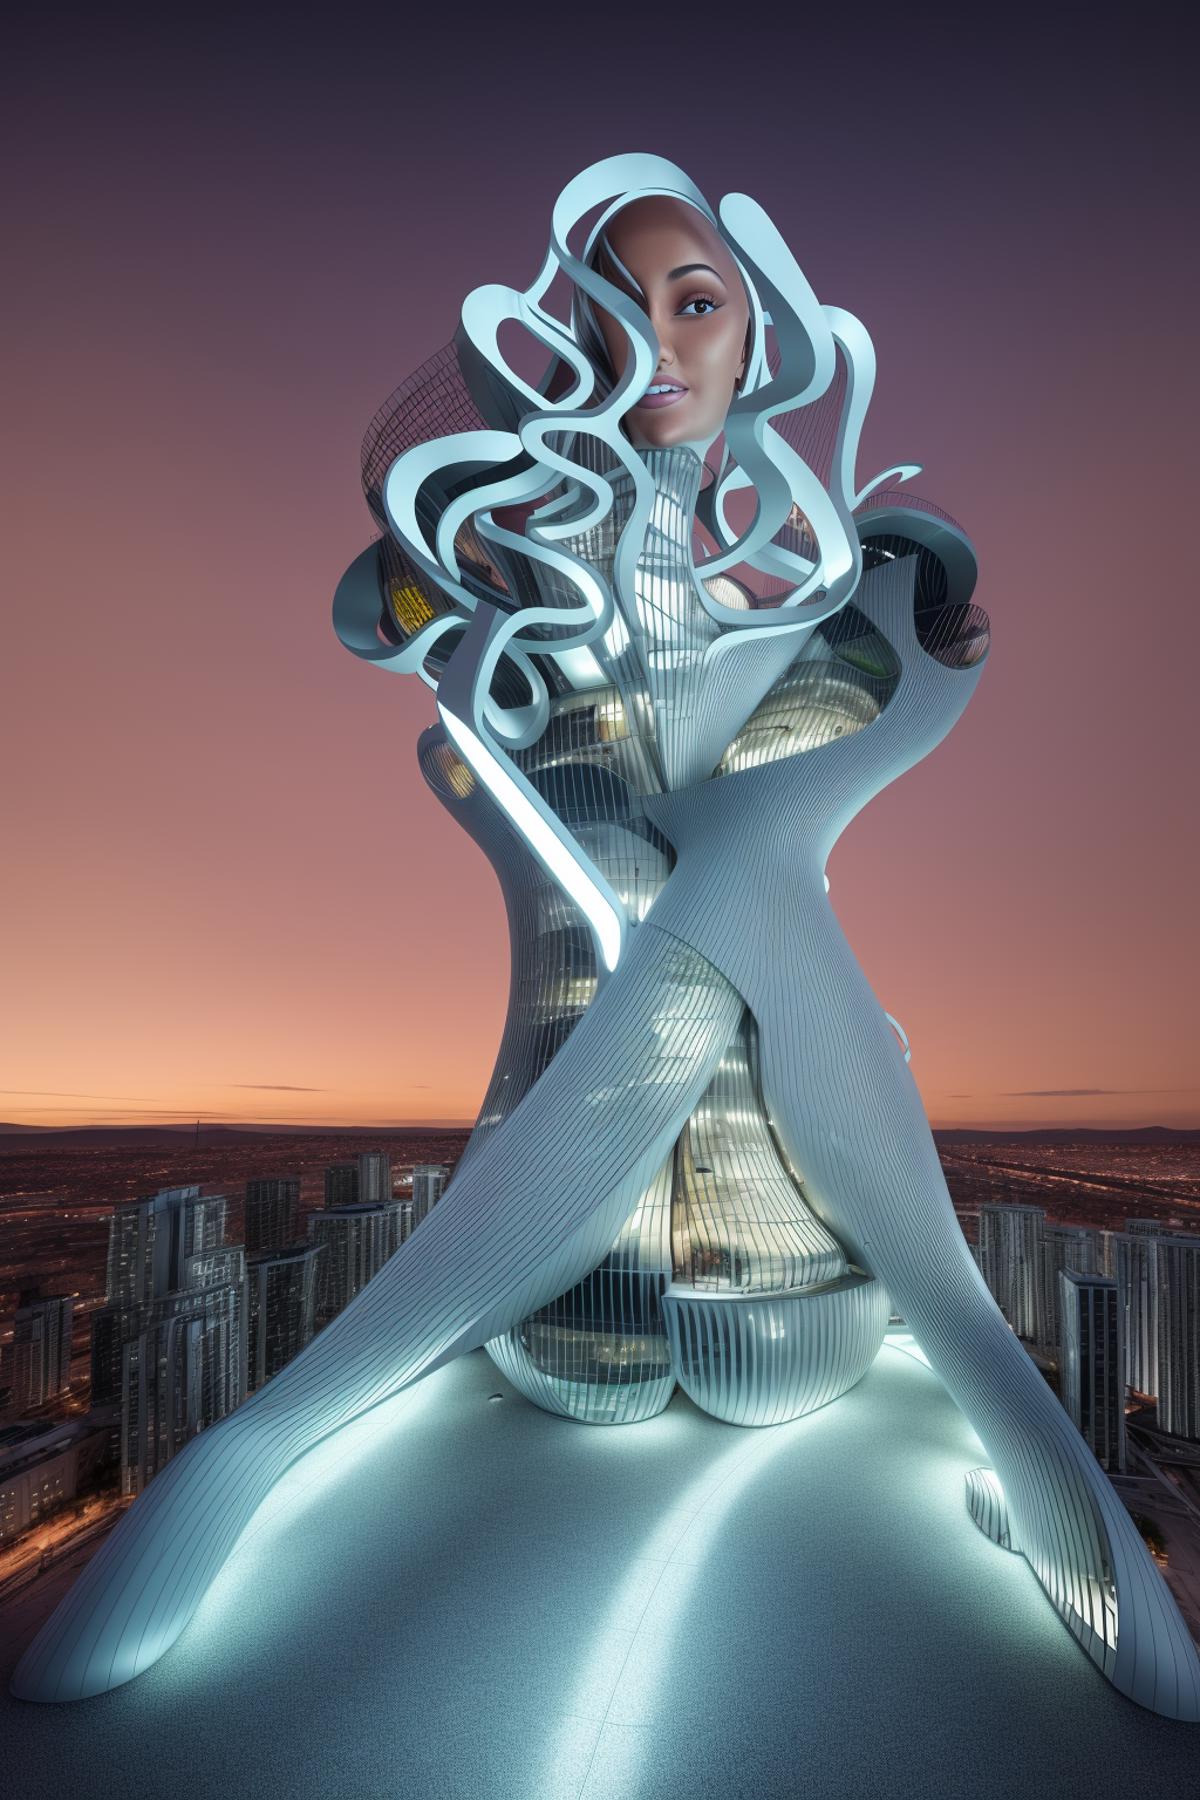 Futuristic cityscape with a massive woman statue in the center.